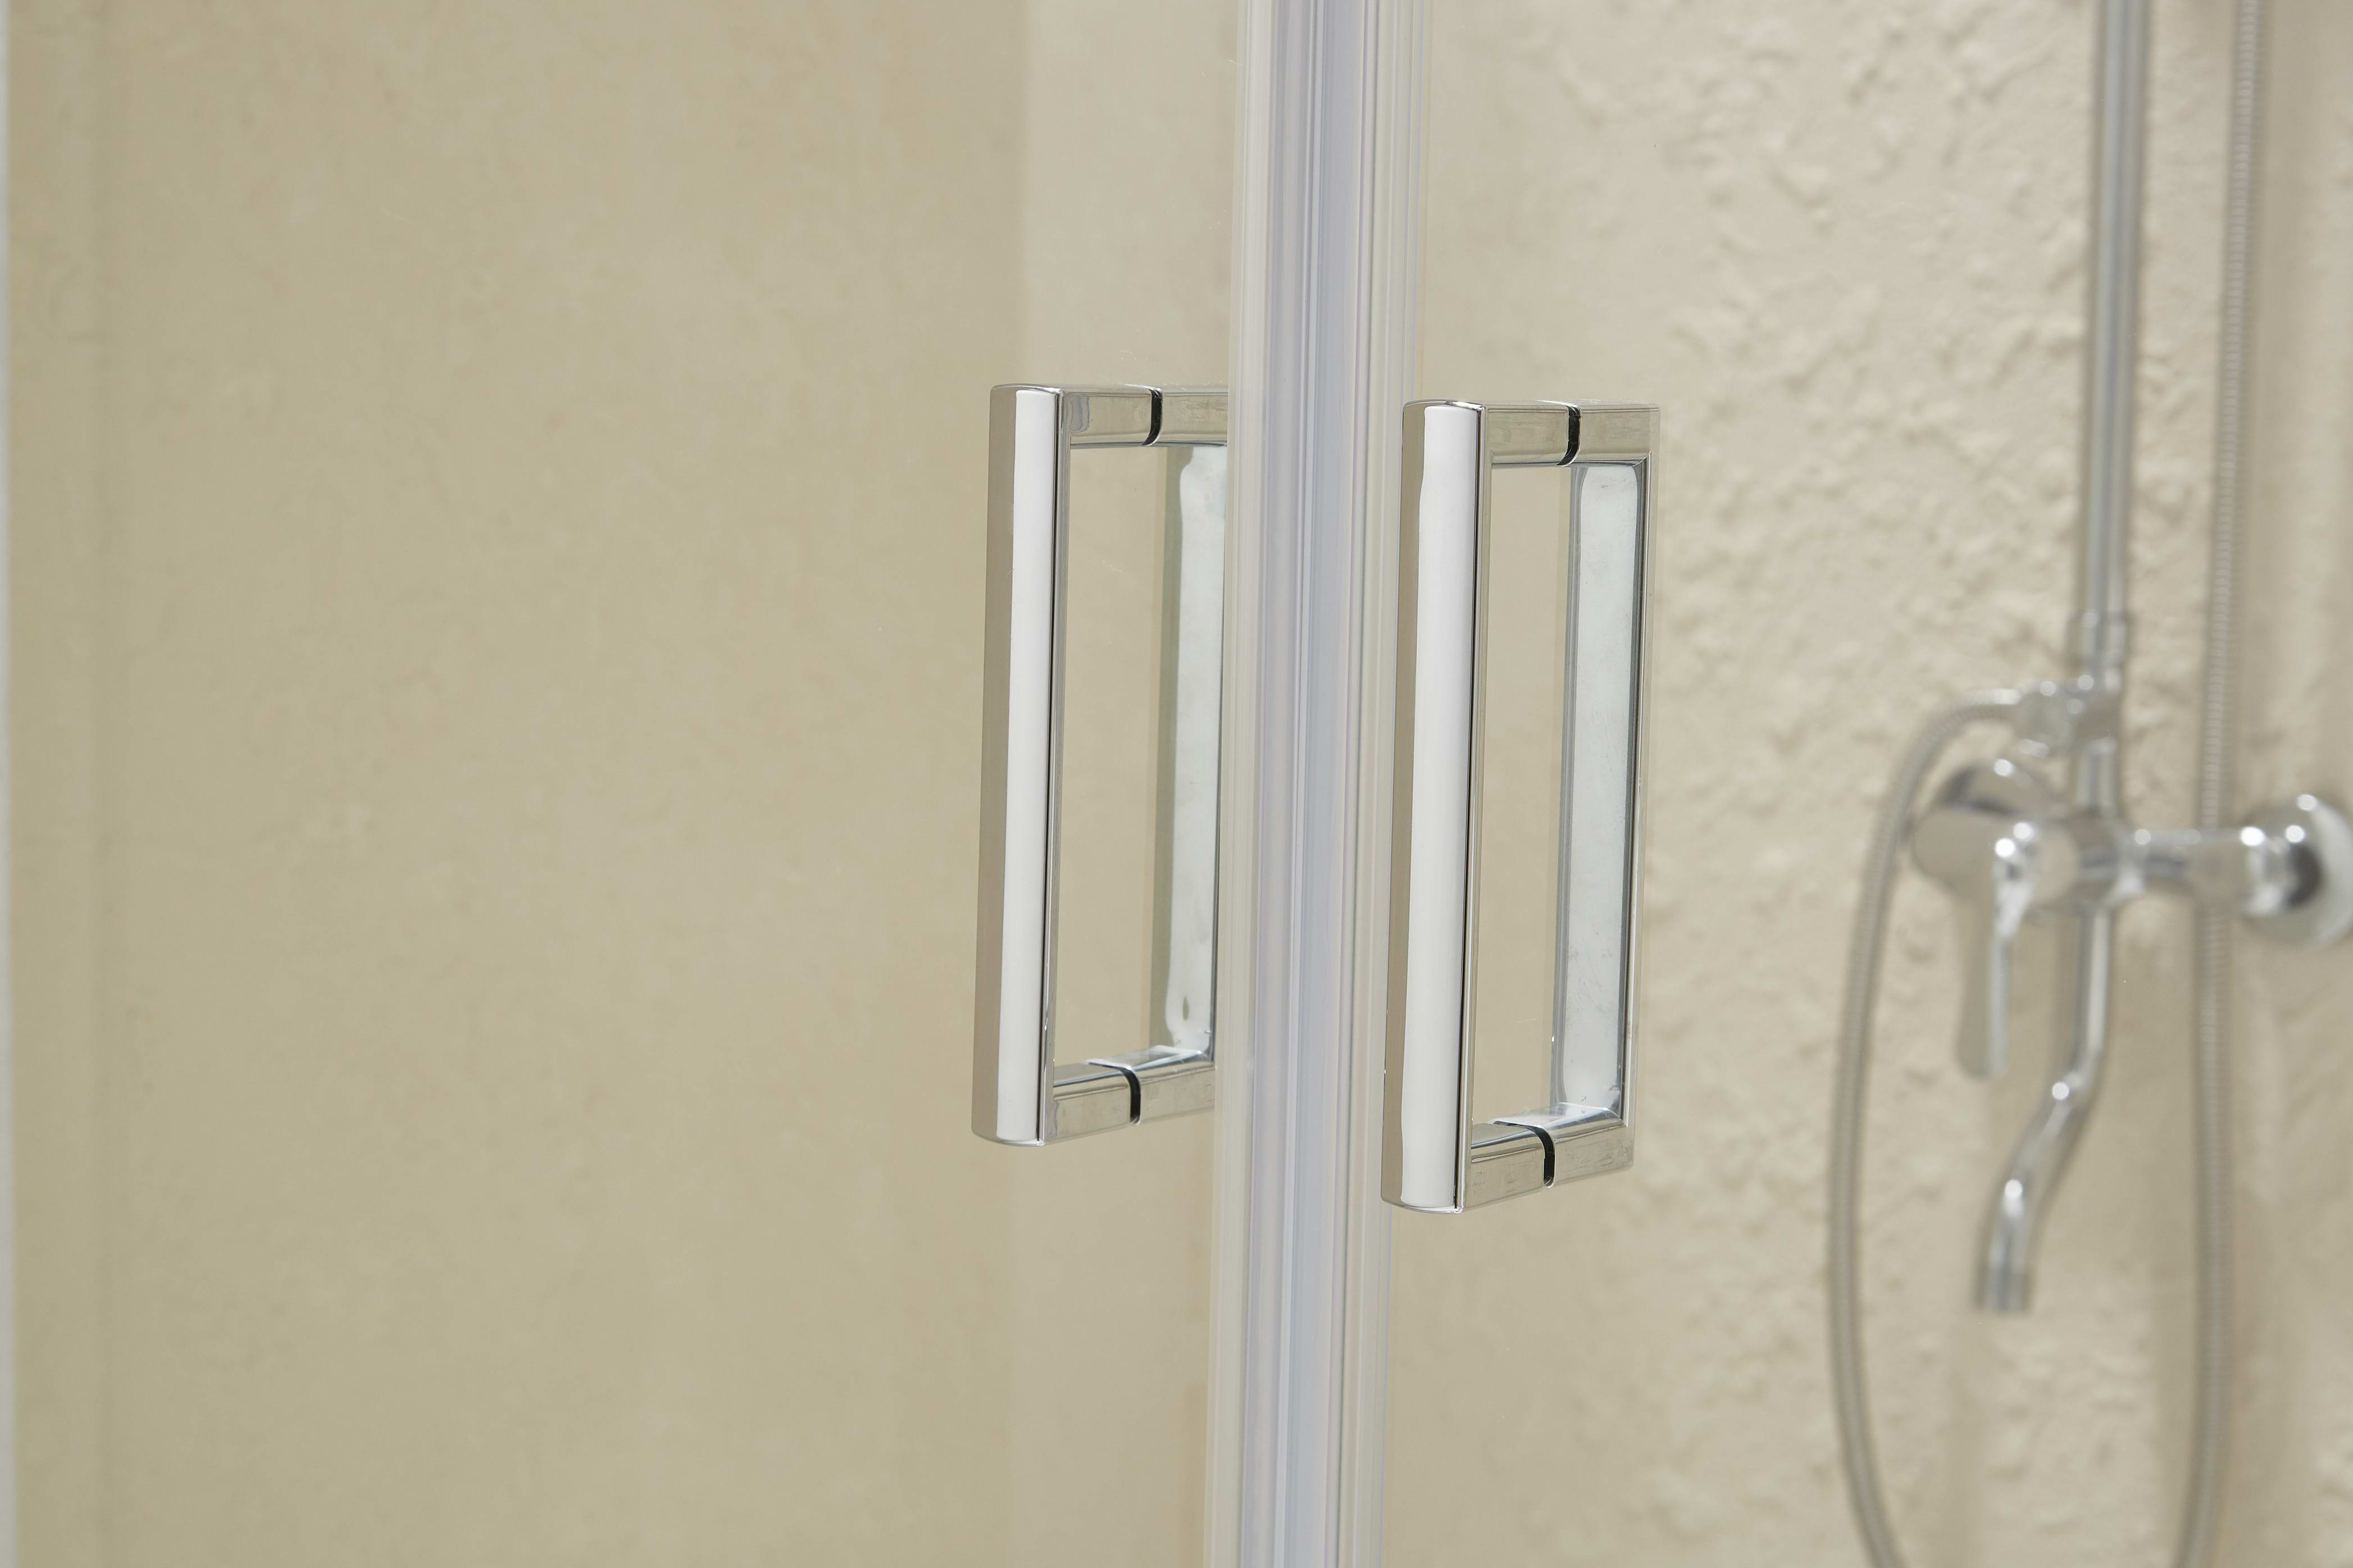 2020 New Bathroom Shower Door Tempered Glass Sliding 6/8mm Panles Aluminum Frame